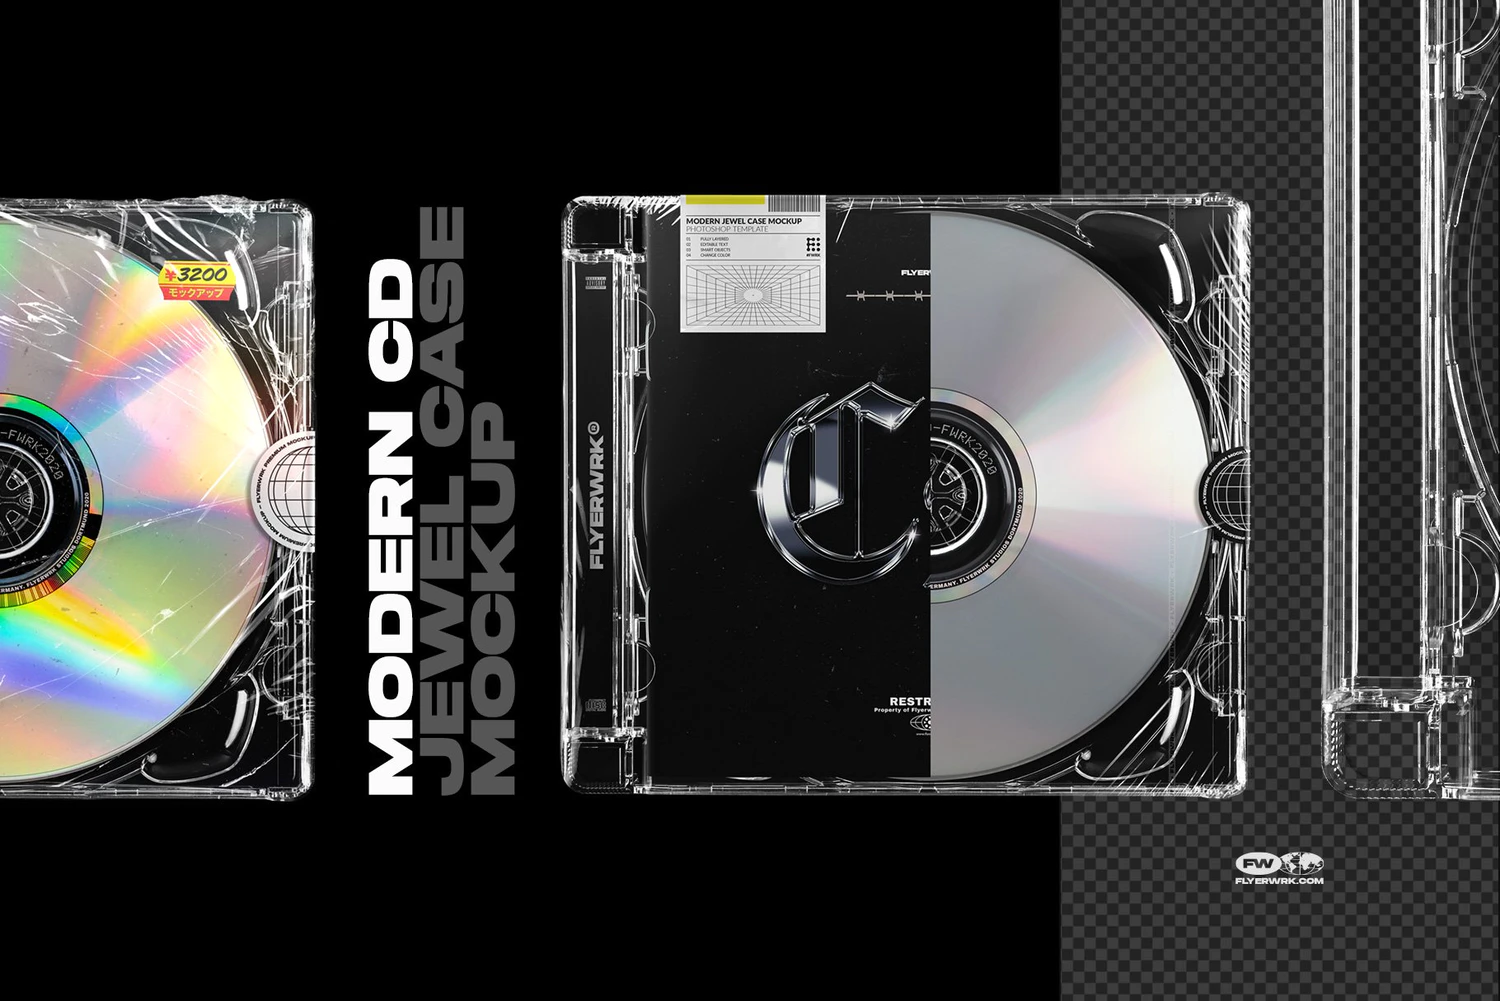 2459 潮流质感CD光盘唱片专辑包装设计贴图ps样机素材展示效果模板合集 flyerwrk – CD Mockup Bundle